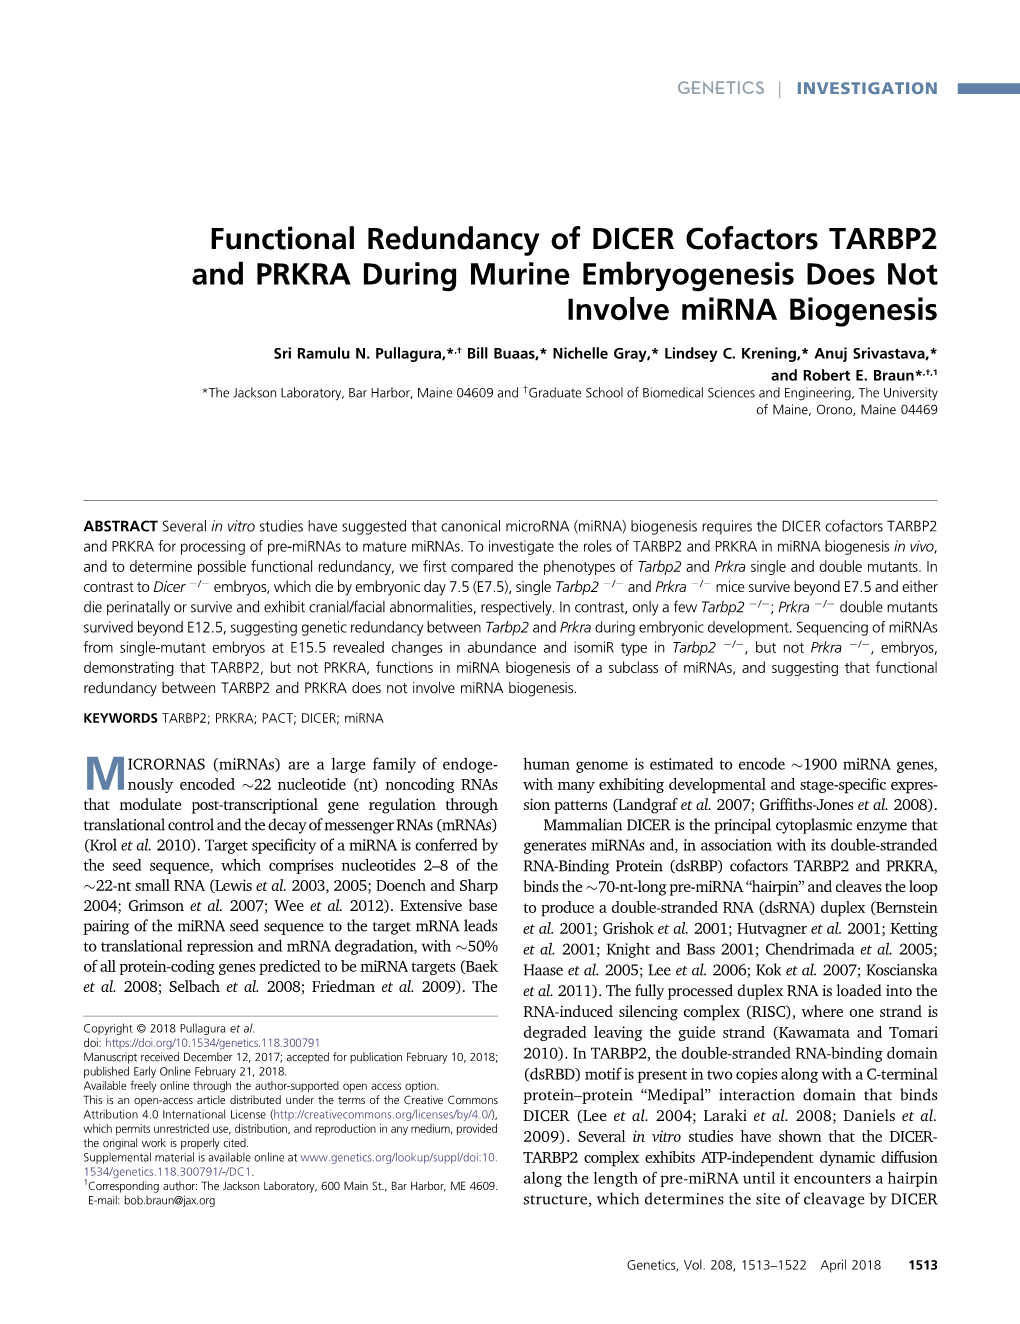 Functional Redundancy of DICER Cofactors TARBP2 and PRKRA During Murine Embryogenesis Does Not Involve Mirna Biogenesis